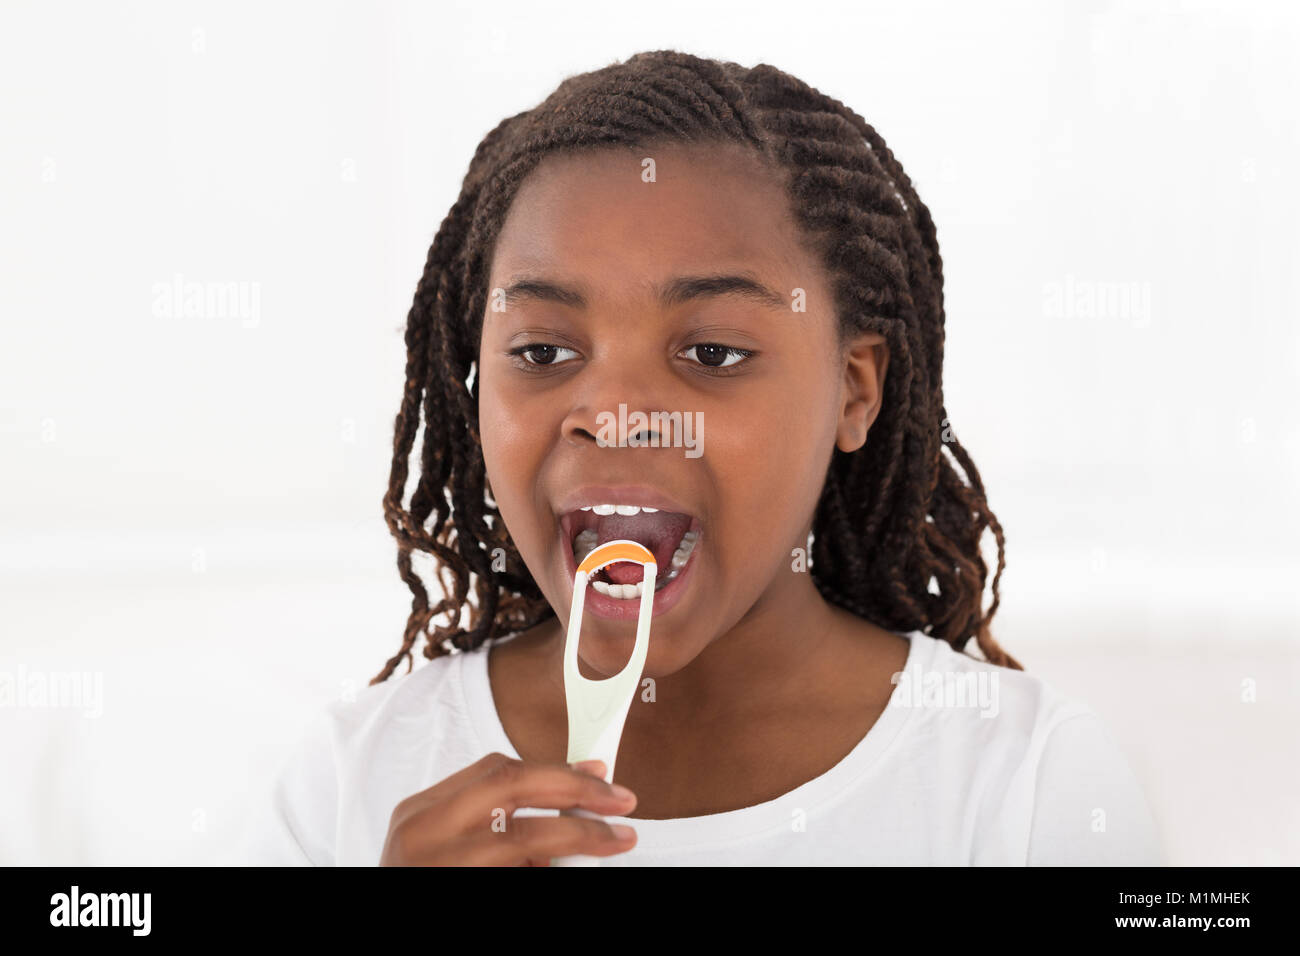 Portrait d'une jeune fille africaine sa langue de nettoyage avec grattoir sur fond blanc Banque D'Images